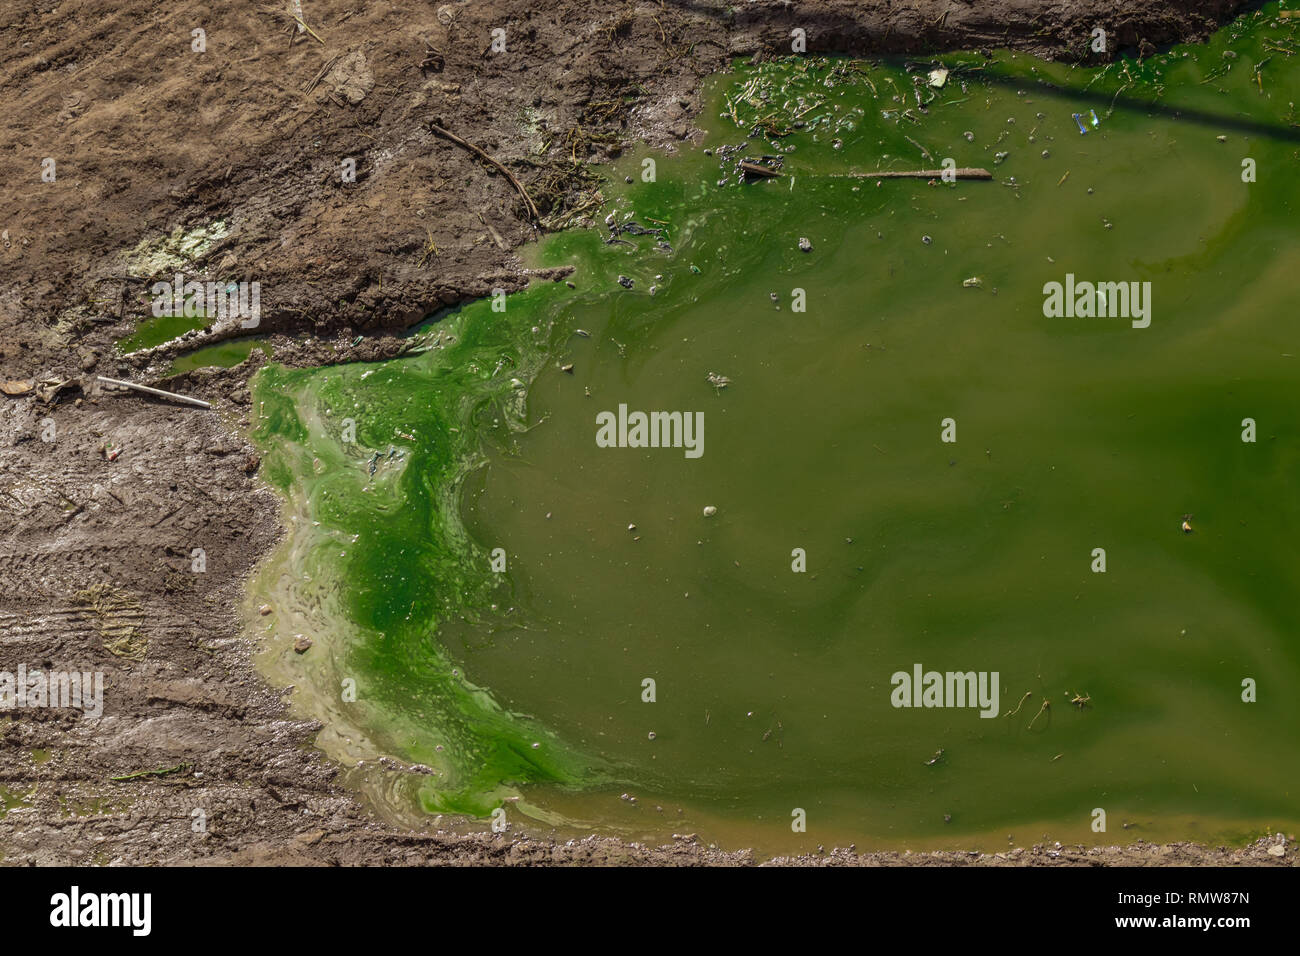 L'eau polluée.. catastrophe chimique de l'eau sale verdâtre sur une terre boueuse. catastrophe environnementale. Banque D'Images